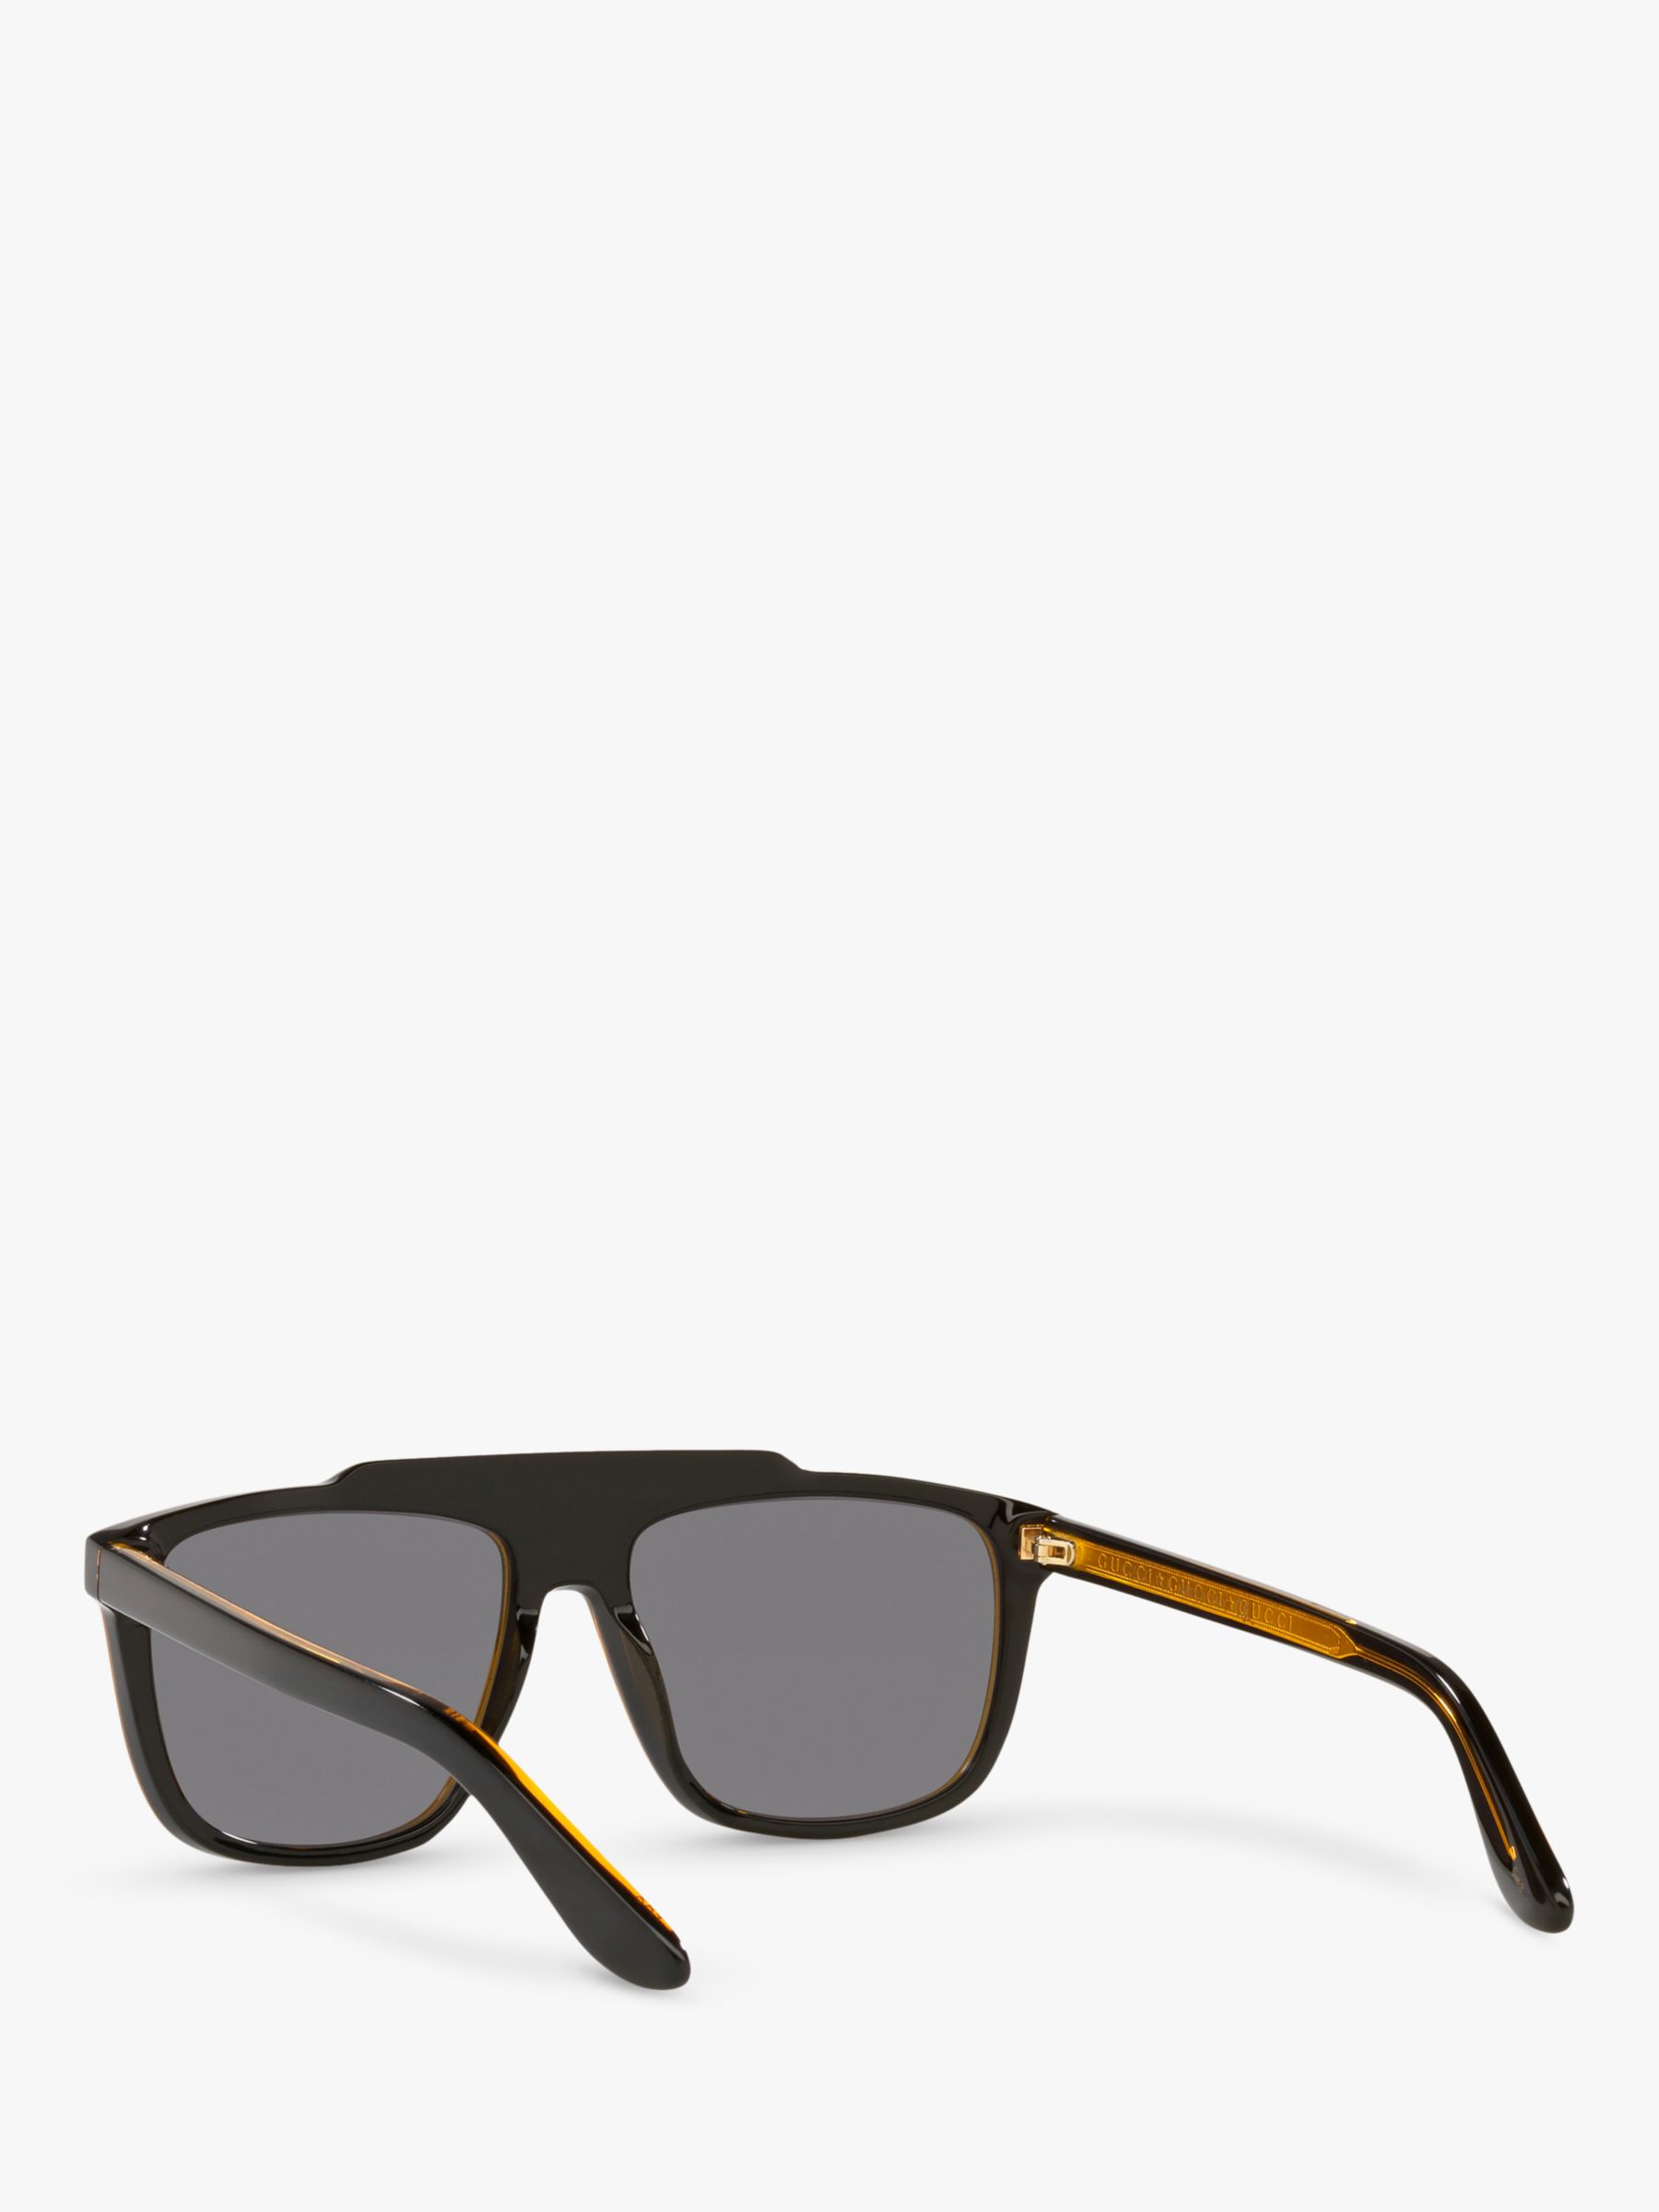 Gucci GG1039S Men's Aviator Sunglasses, Black/Grey